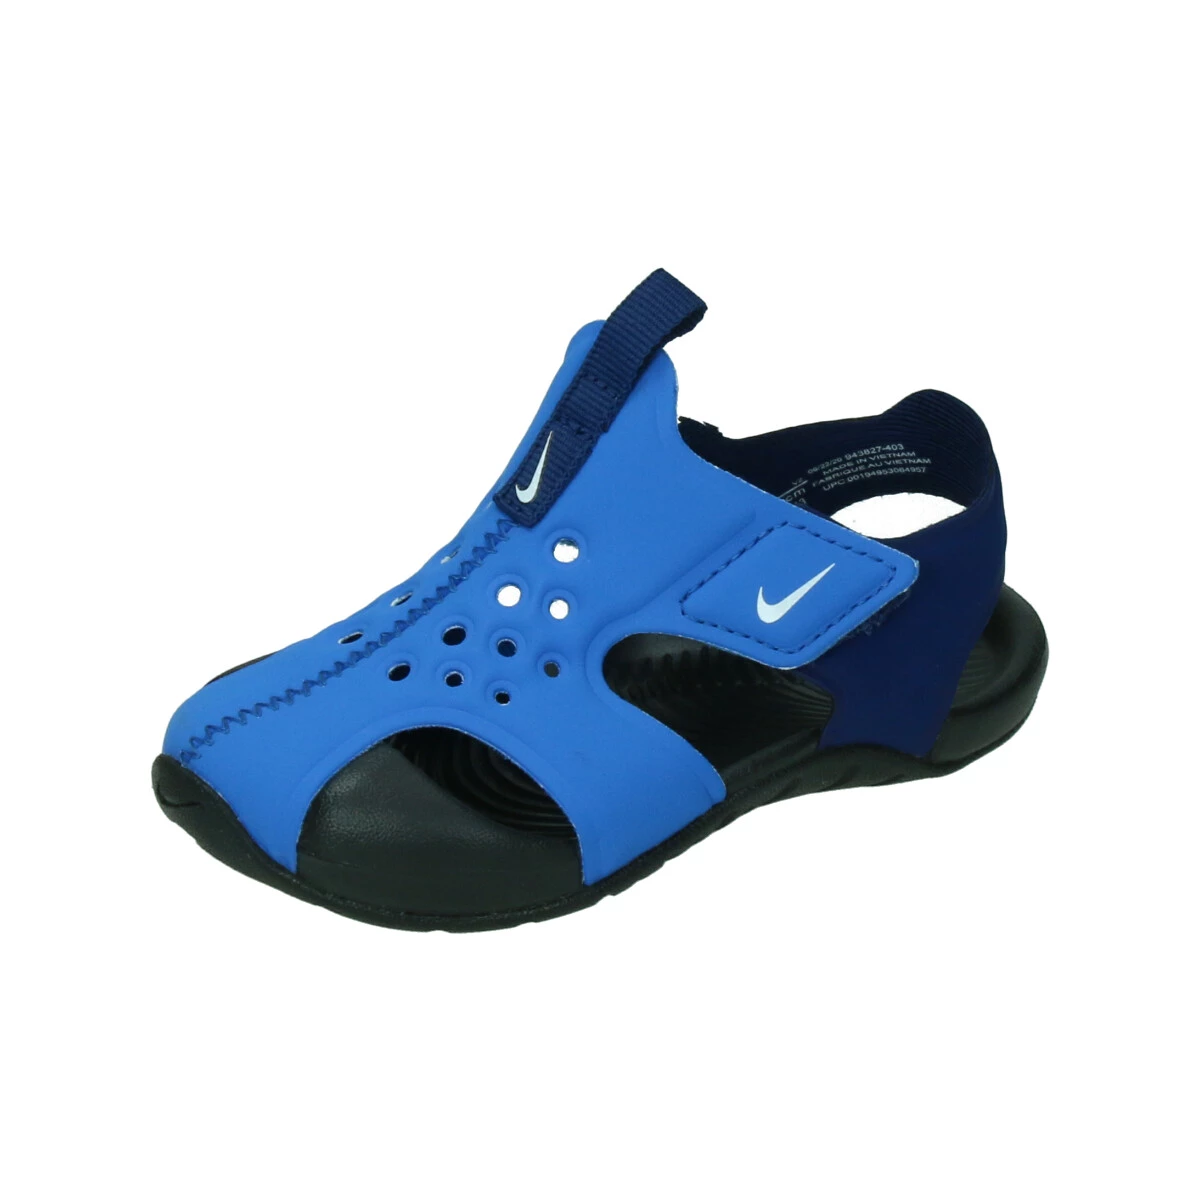 Ruim kwaadaardig Dempsey Nike Sunray Protect 2 Peuter Sandalen van sandalen